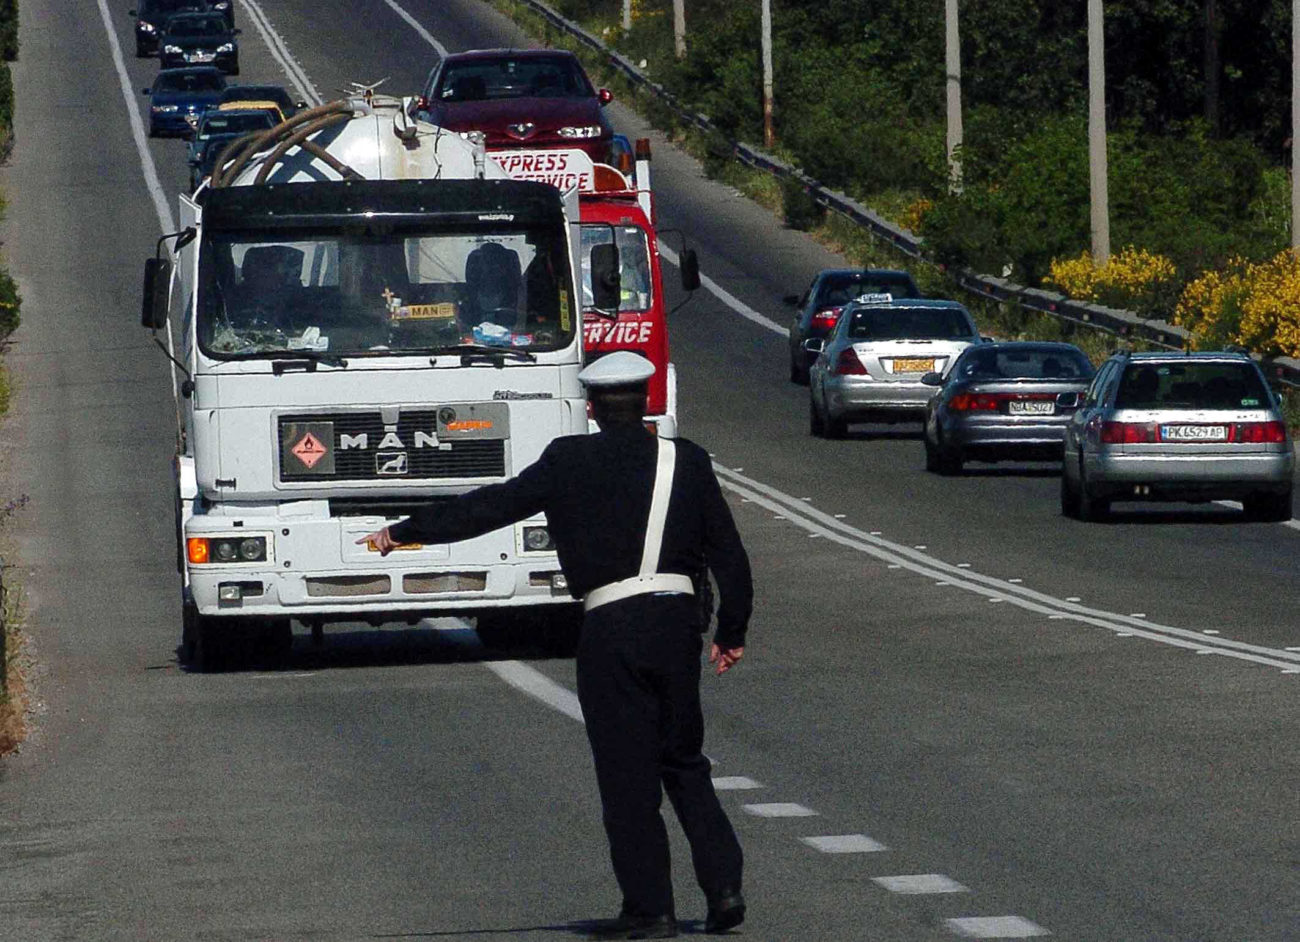 Παράνομοι μετανάστες έδωσαν 500 ευρώ για Ηγουμενίτσα αλλά ο οδηγός τους μετέφερε στην Αθήνα